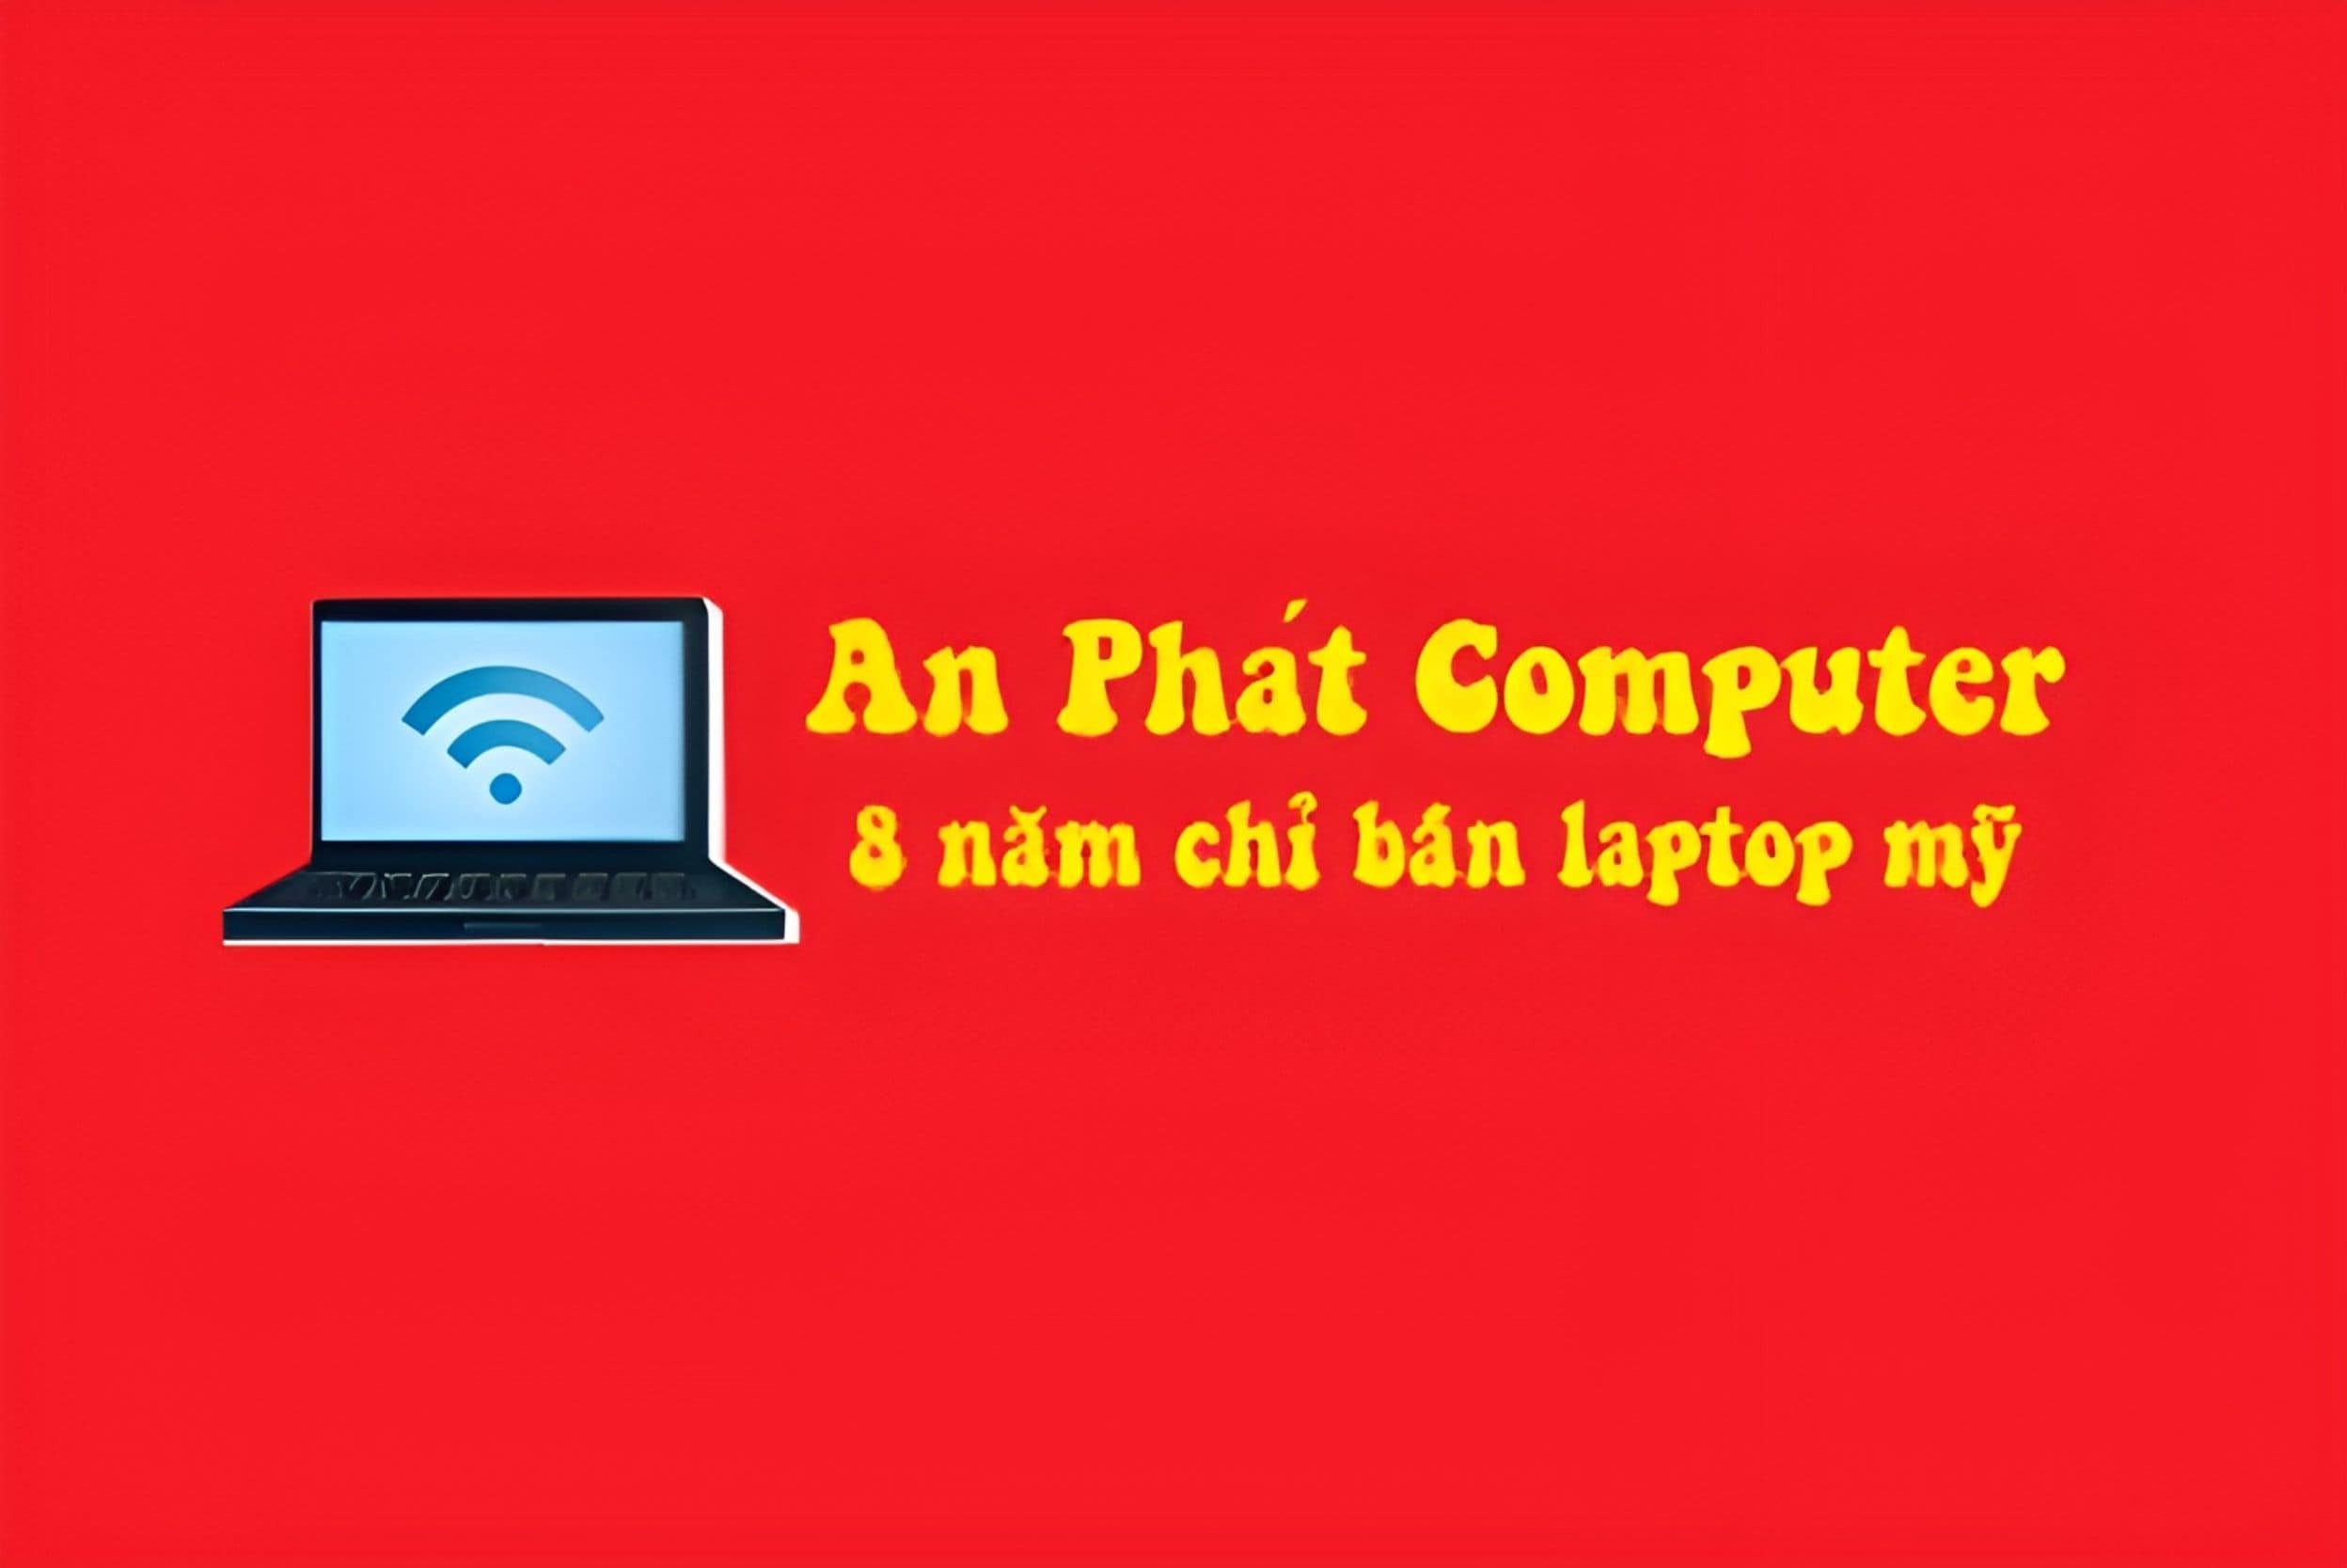 an-phat-computer-logo